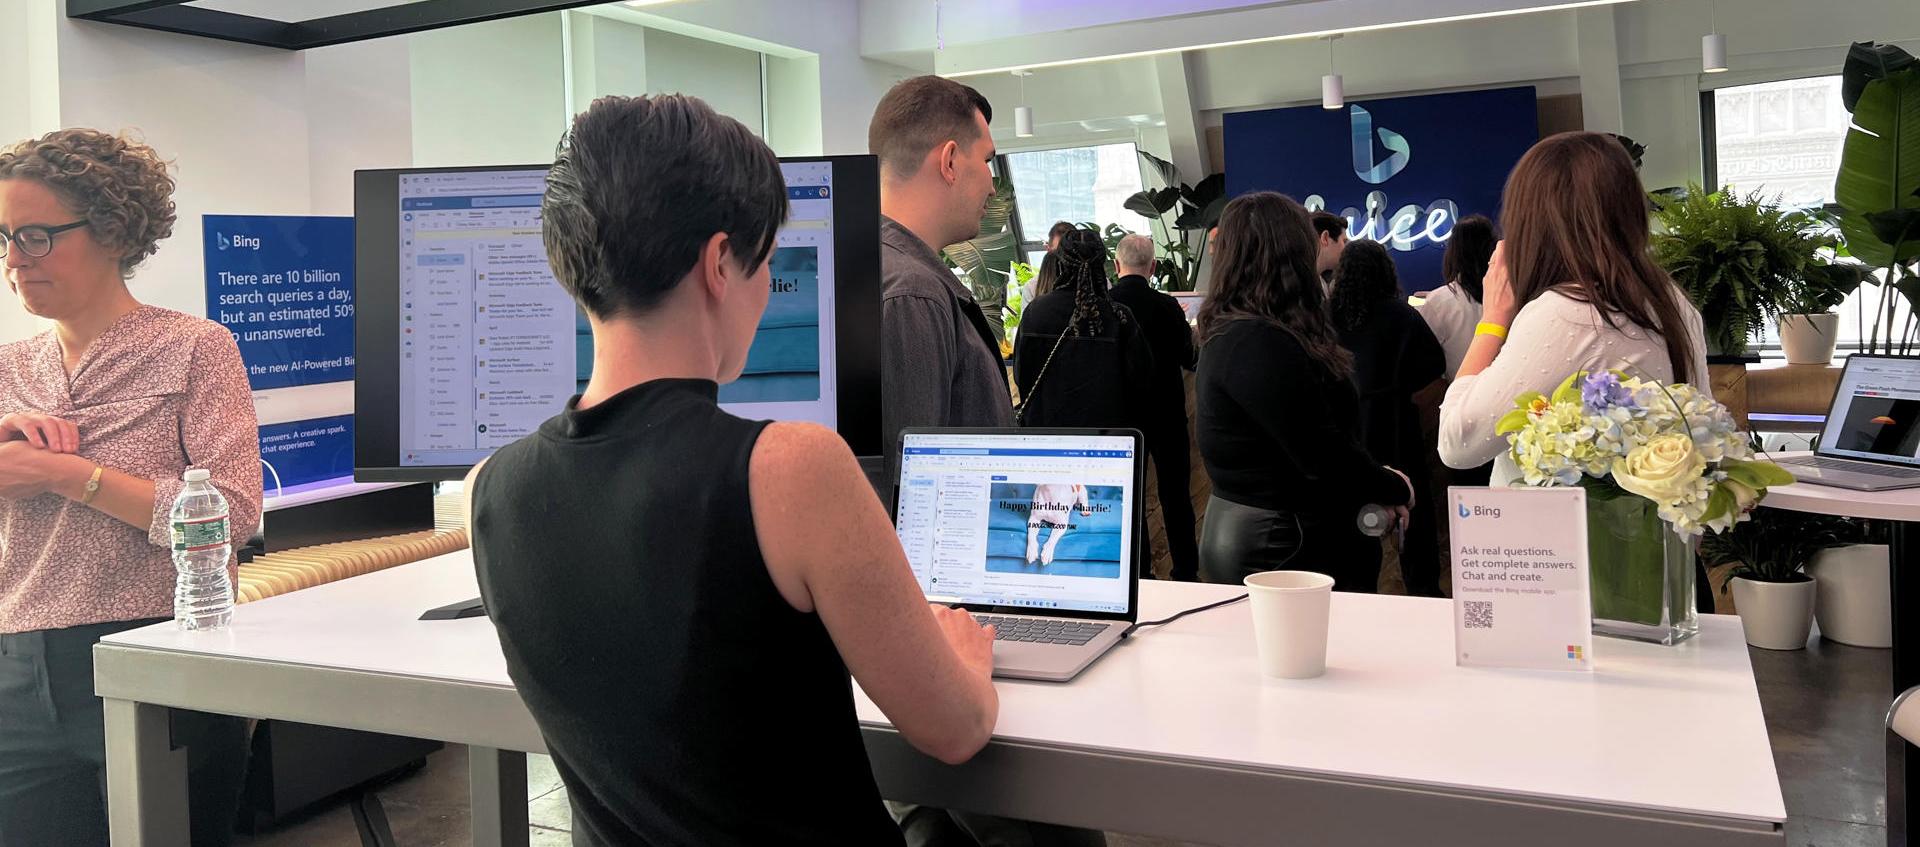 Varias personas conocieron las nuevas herramientas de Inteligencia Artificial en una tienda de Microsoft, en Nueva York